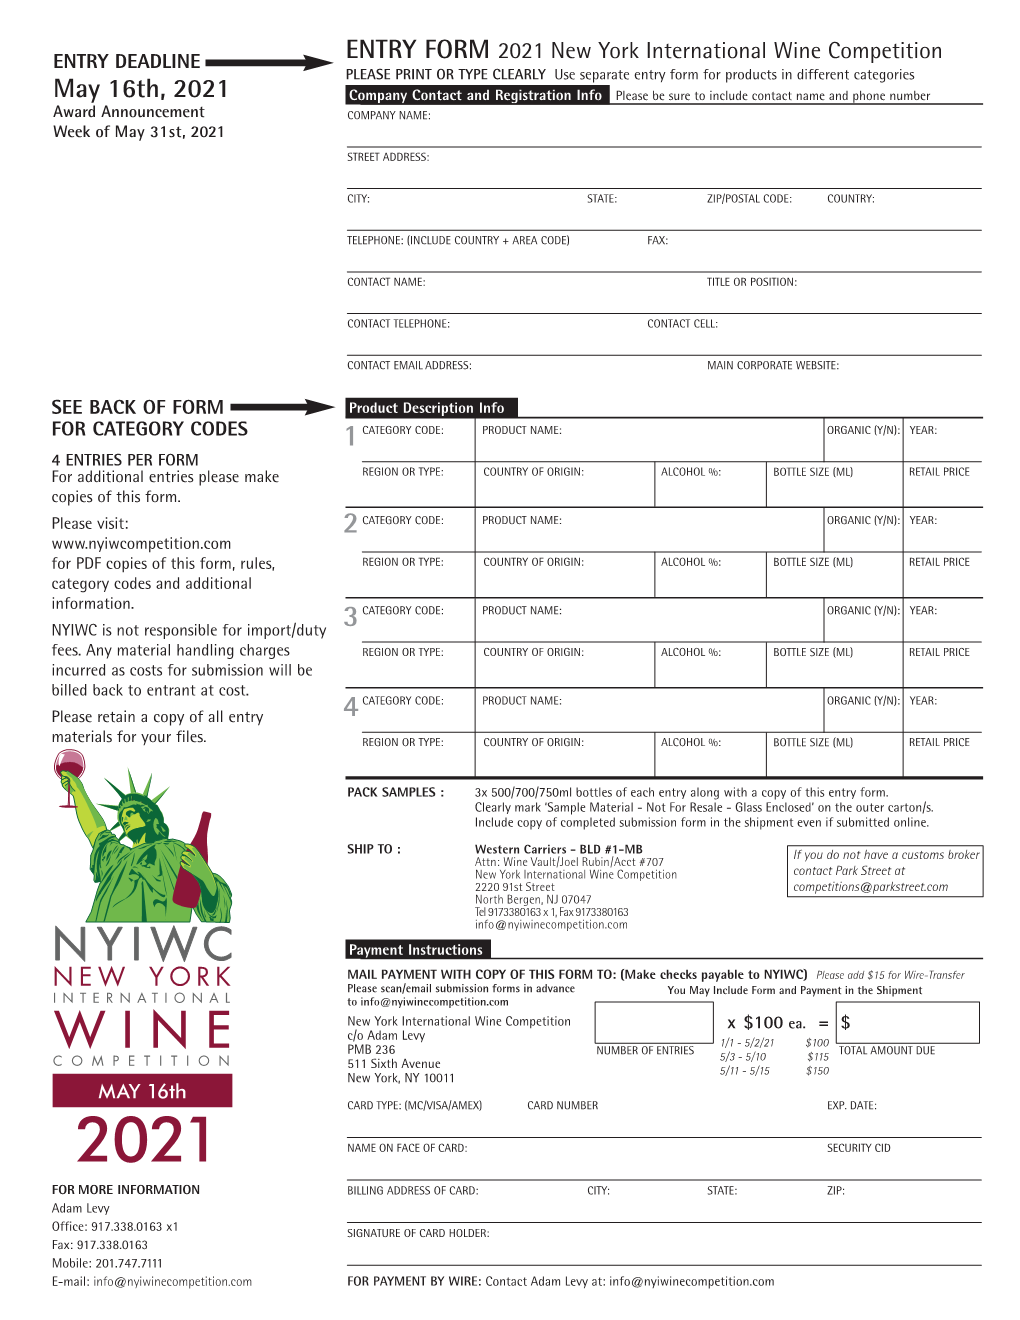 NYIWC Wineform-2021-4-15 Copy